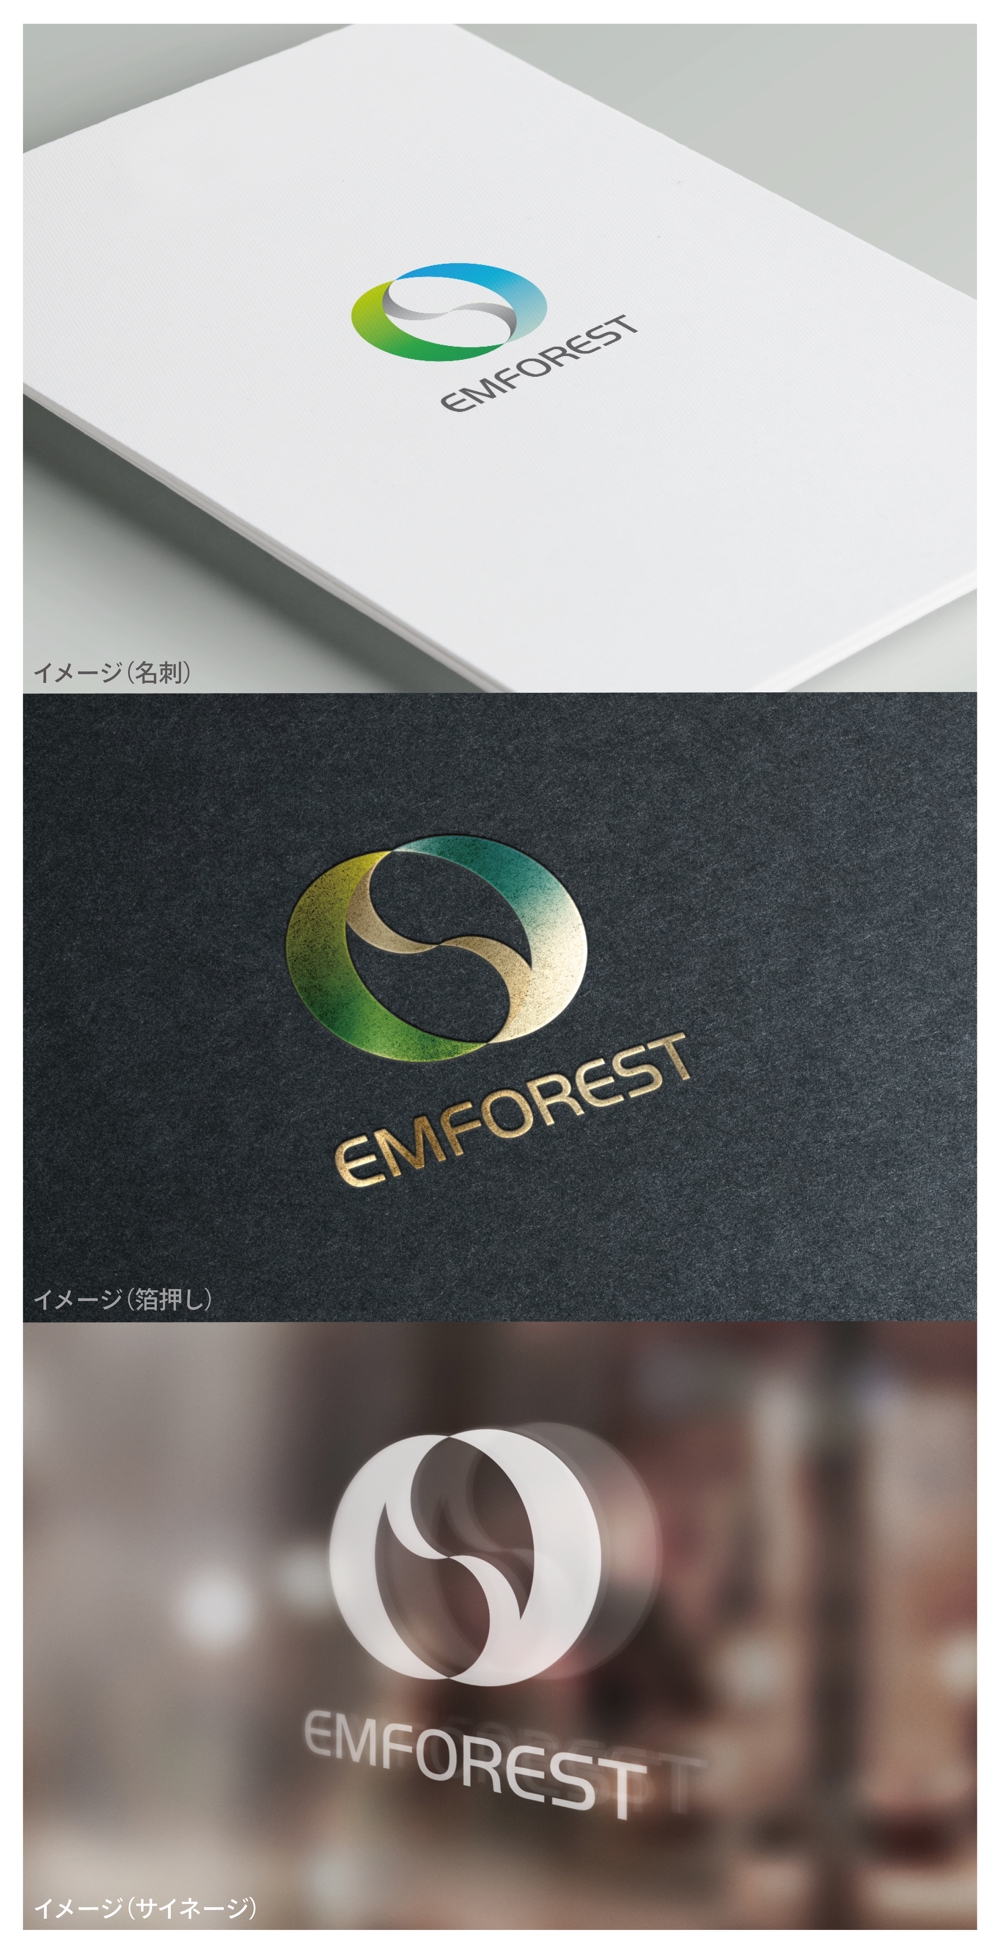 EMFOREST_logo02_01.jpg